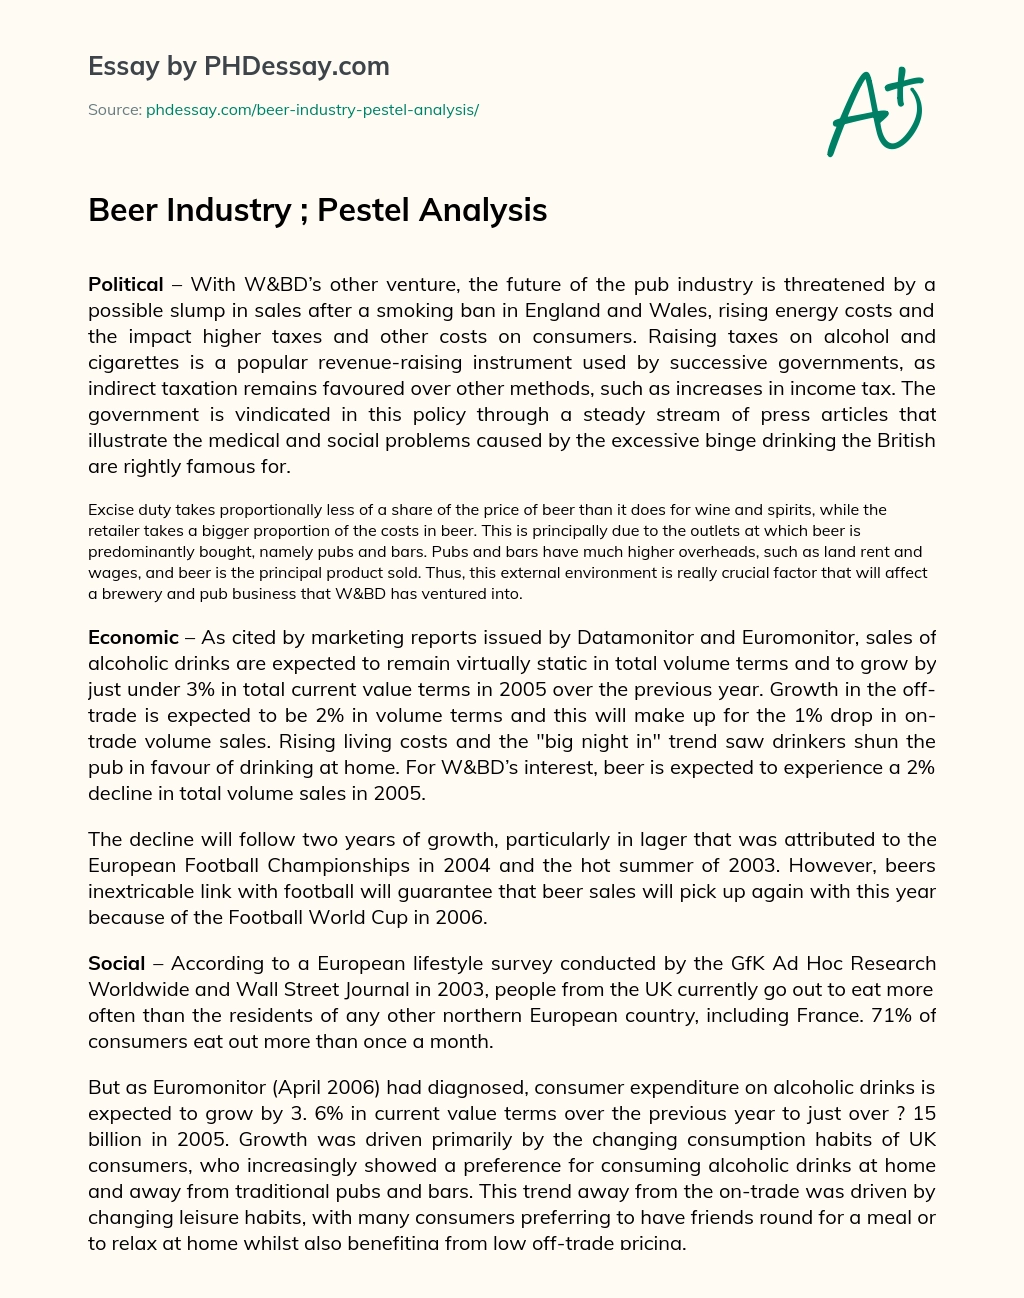 Beer Industry ; Pestel Analysis essay